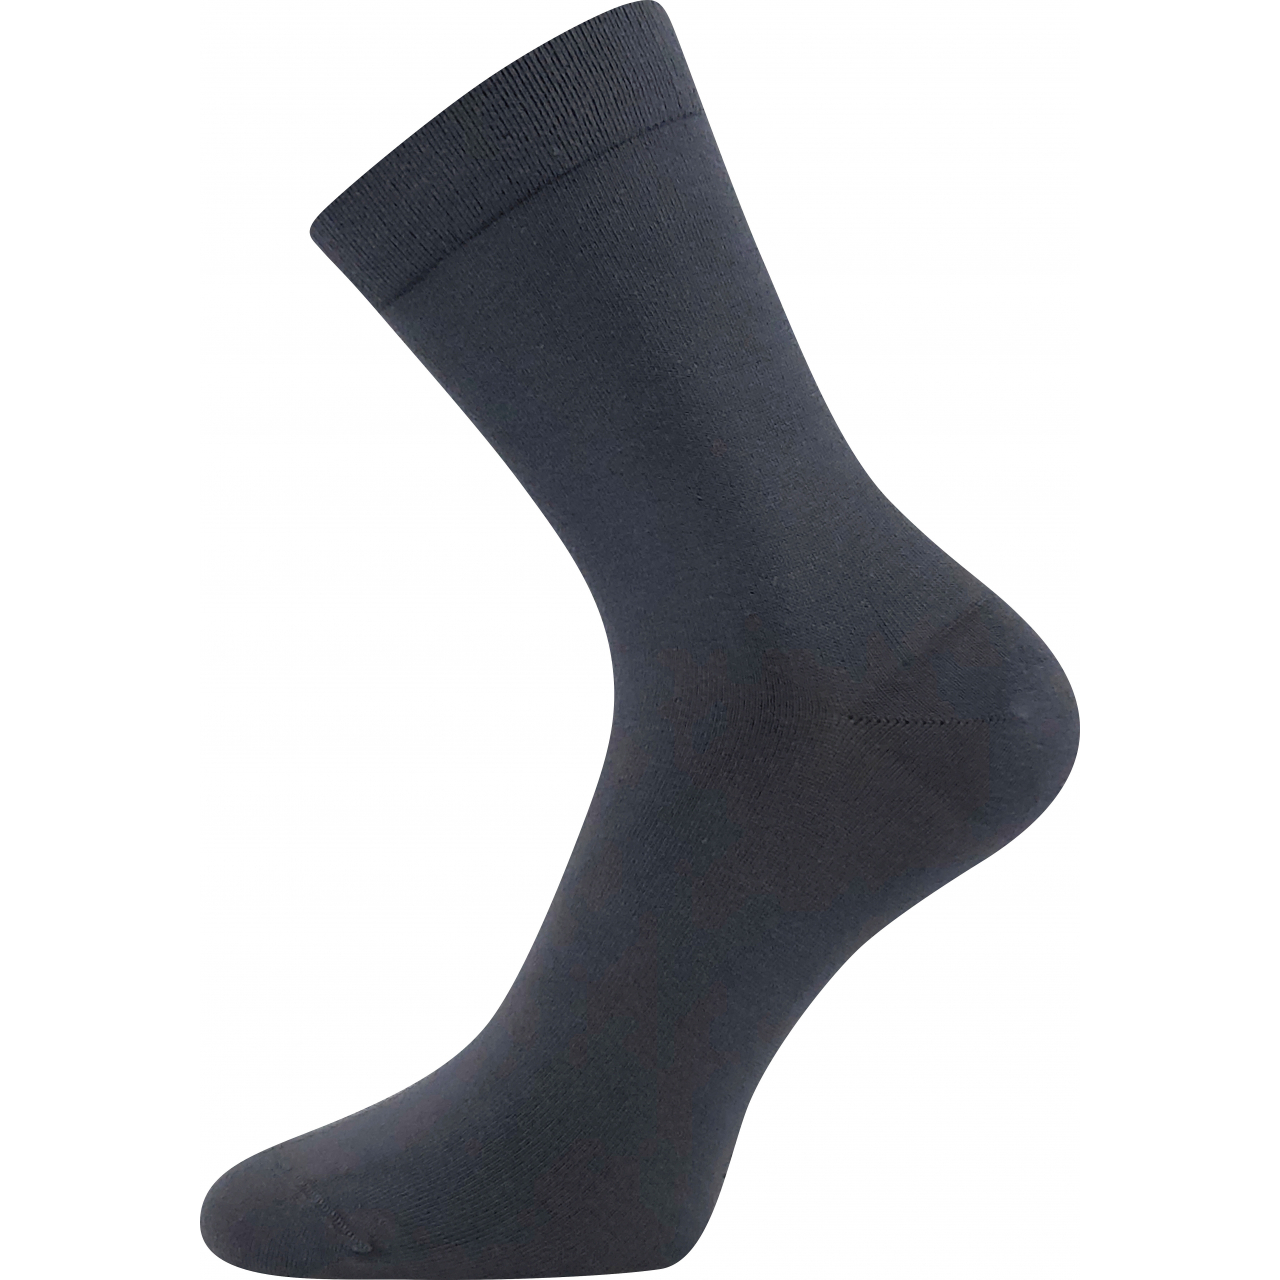 Ponožky unisex zdravotní Lonka Drbambik - tmavě šedé, 43-46